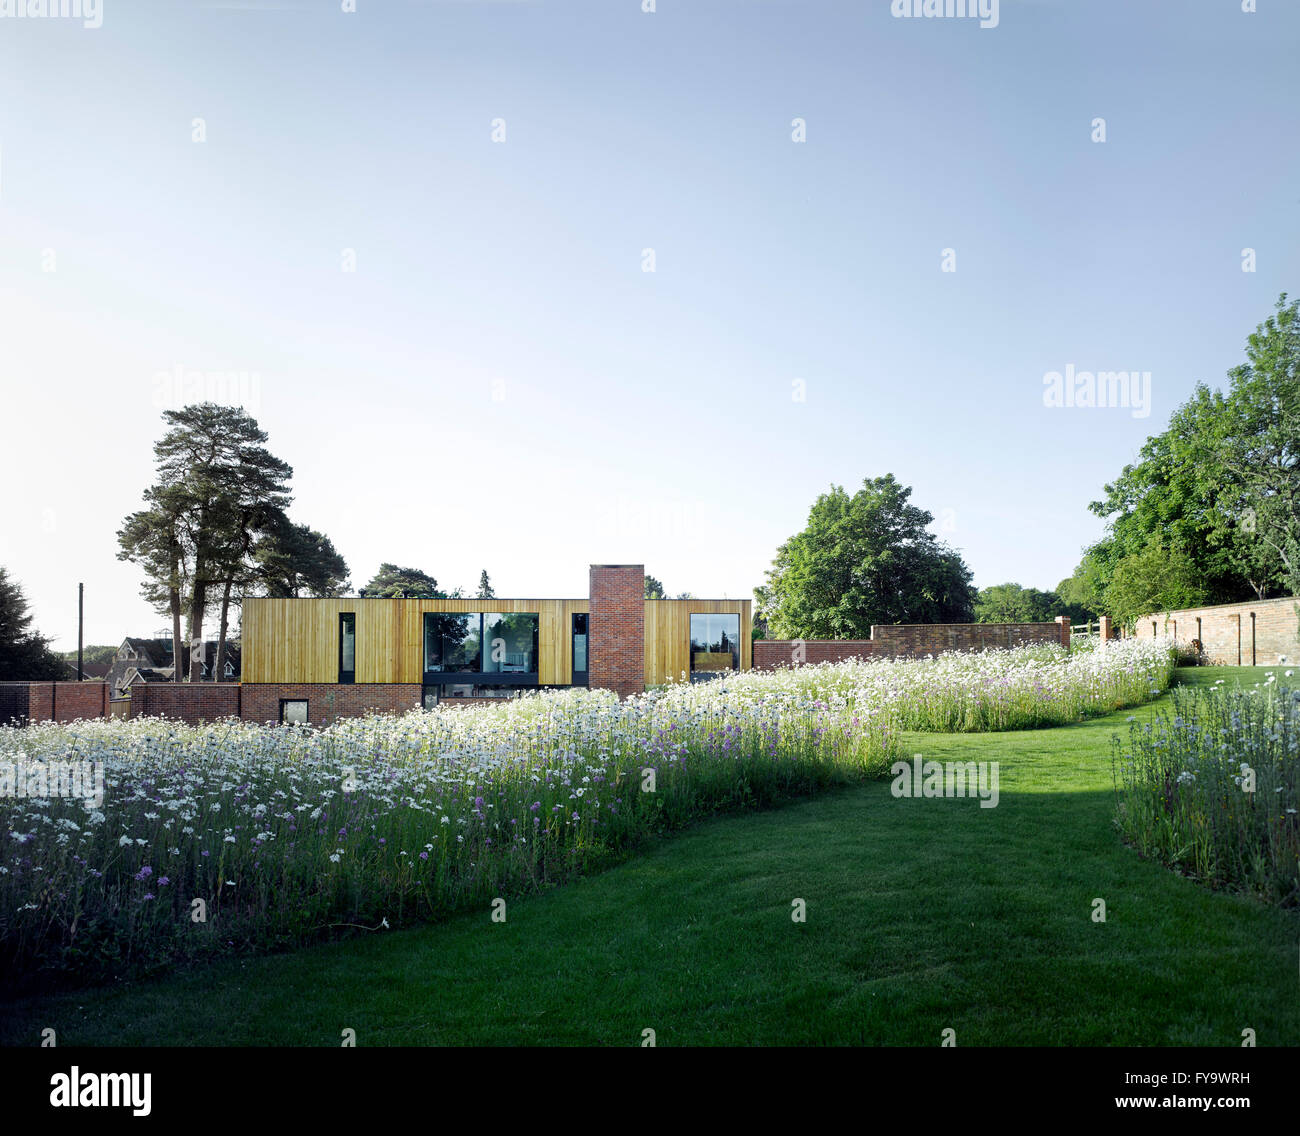 Fernsicht mit Wildblumenwiese, Gartenmauer und modernistischen Gebäude. Cheeran Haus, Lower Basildon, Großbritannien. Architekt: John Pardey Architekten, 2015. Stockfoto